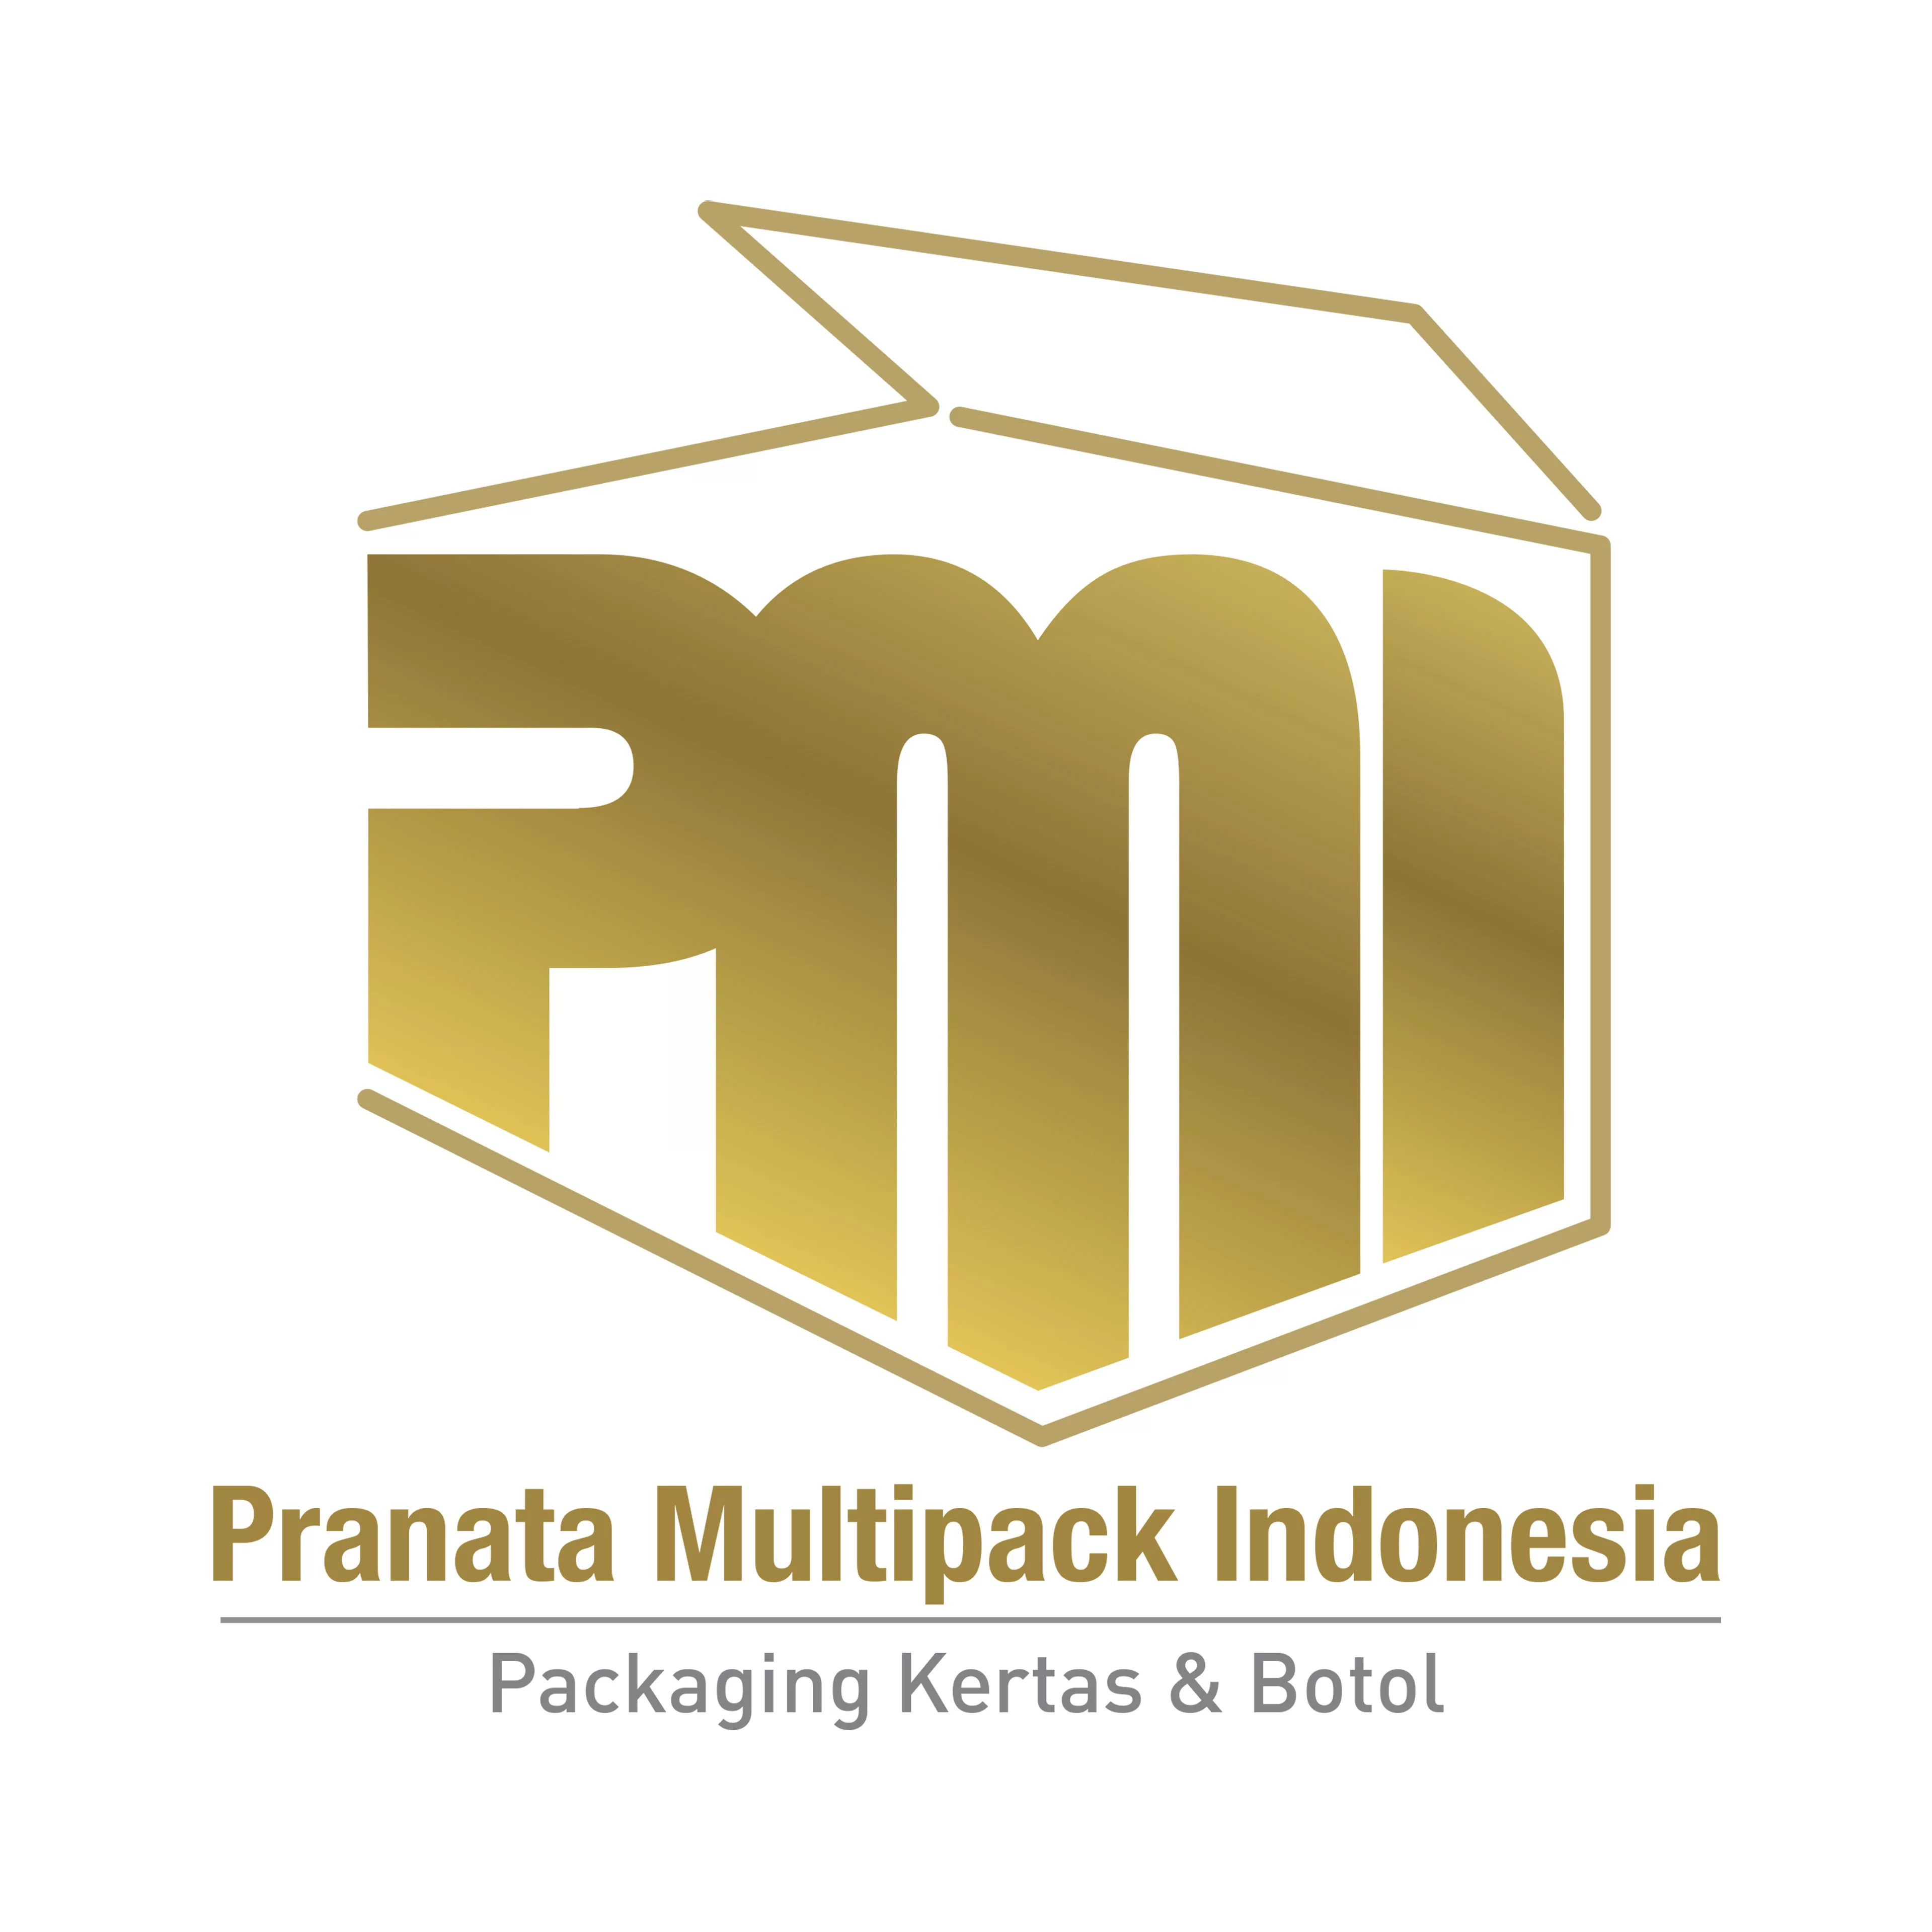 Pranata Multipack Indonesia